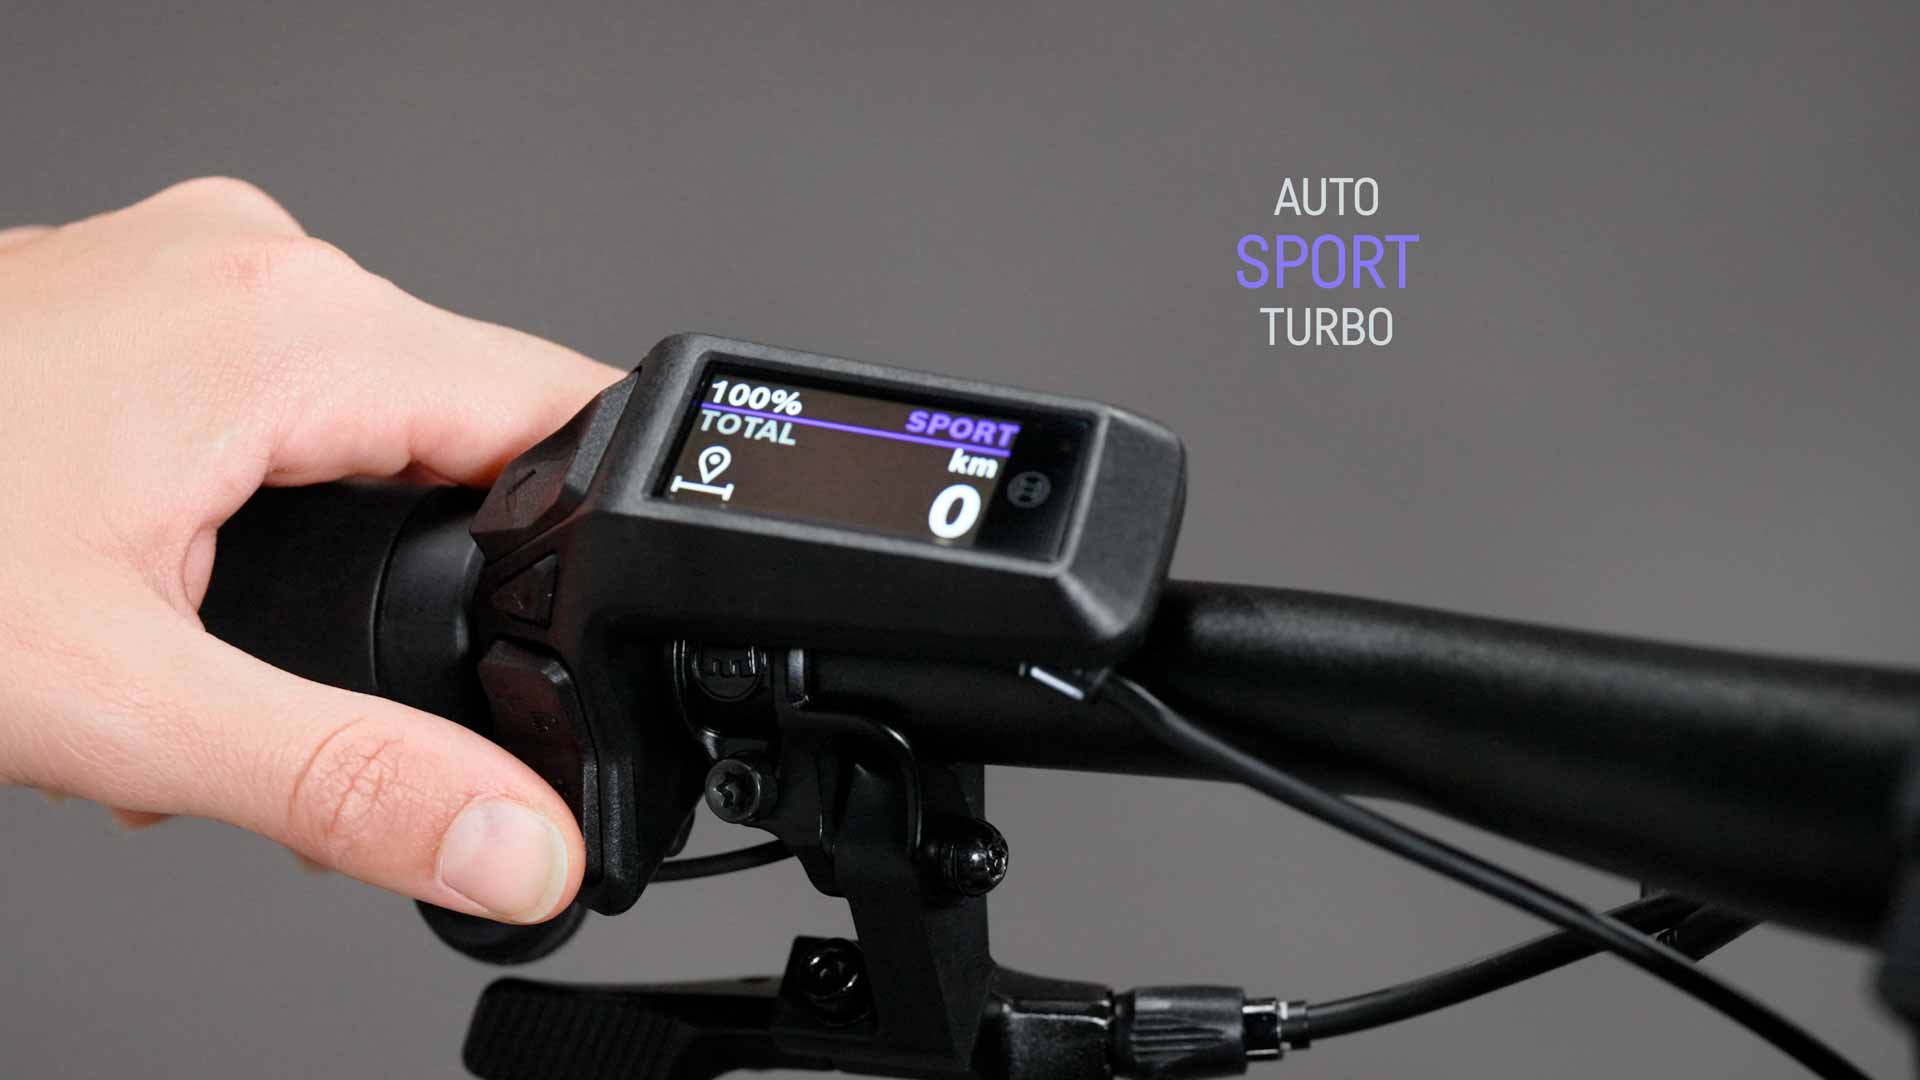 Het Bosch Purion 200 scherm gebruiken om van rijmodus te veranderen en de verlichting van je Pathlite:ON SUV te bedienen